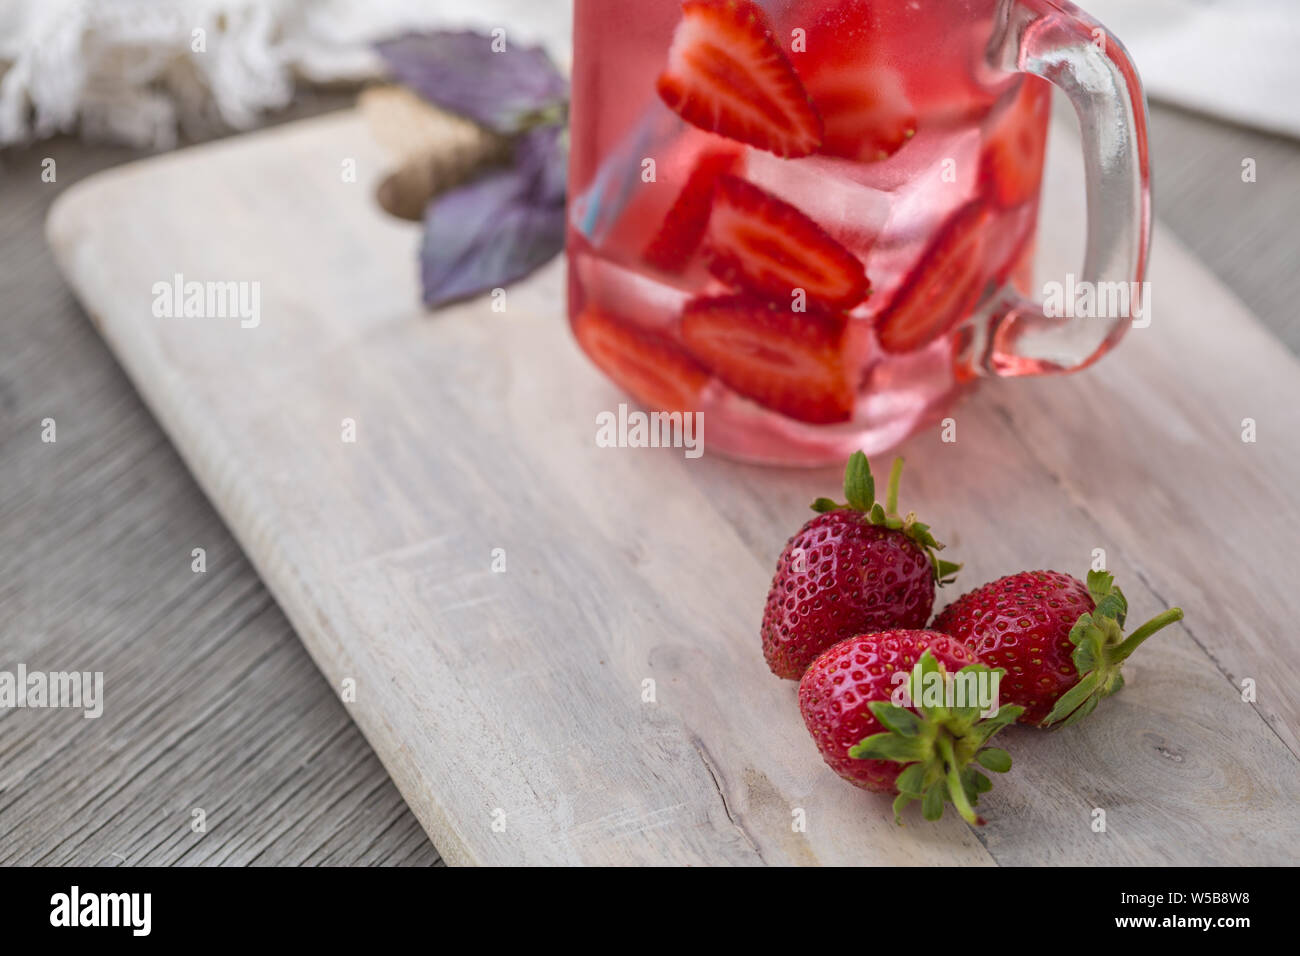 Accueil fizzy drink avec de la glace et de fraise sur un fond clair, selective focus. Photo de boisson rafraîchissante faite maison Banque D'Images